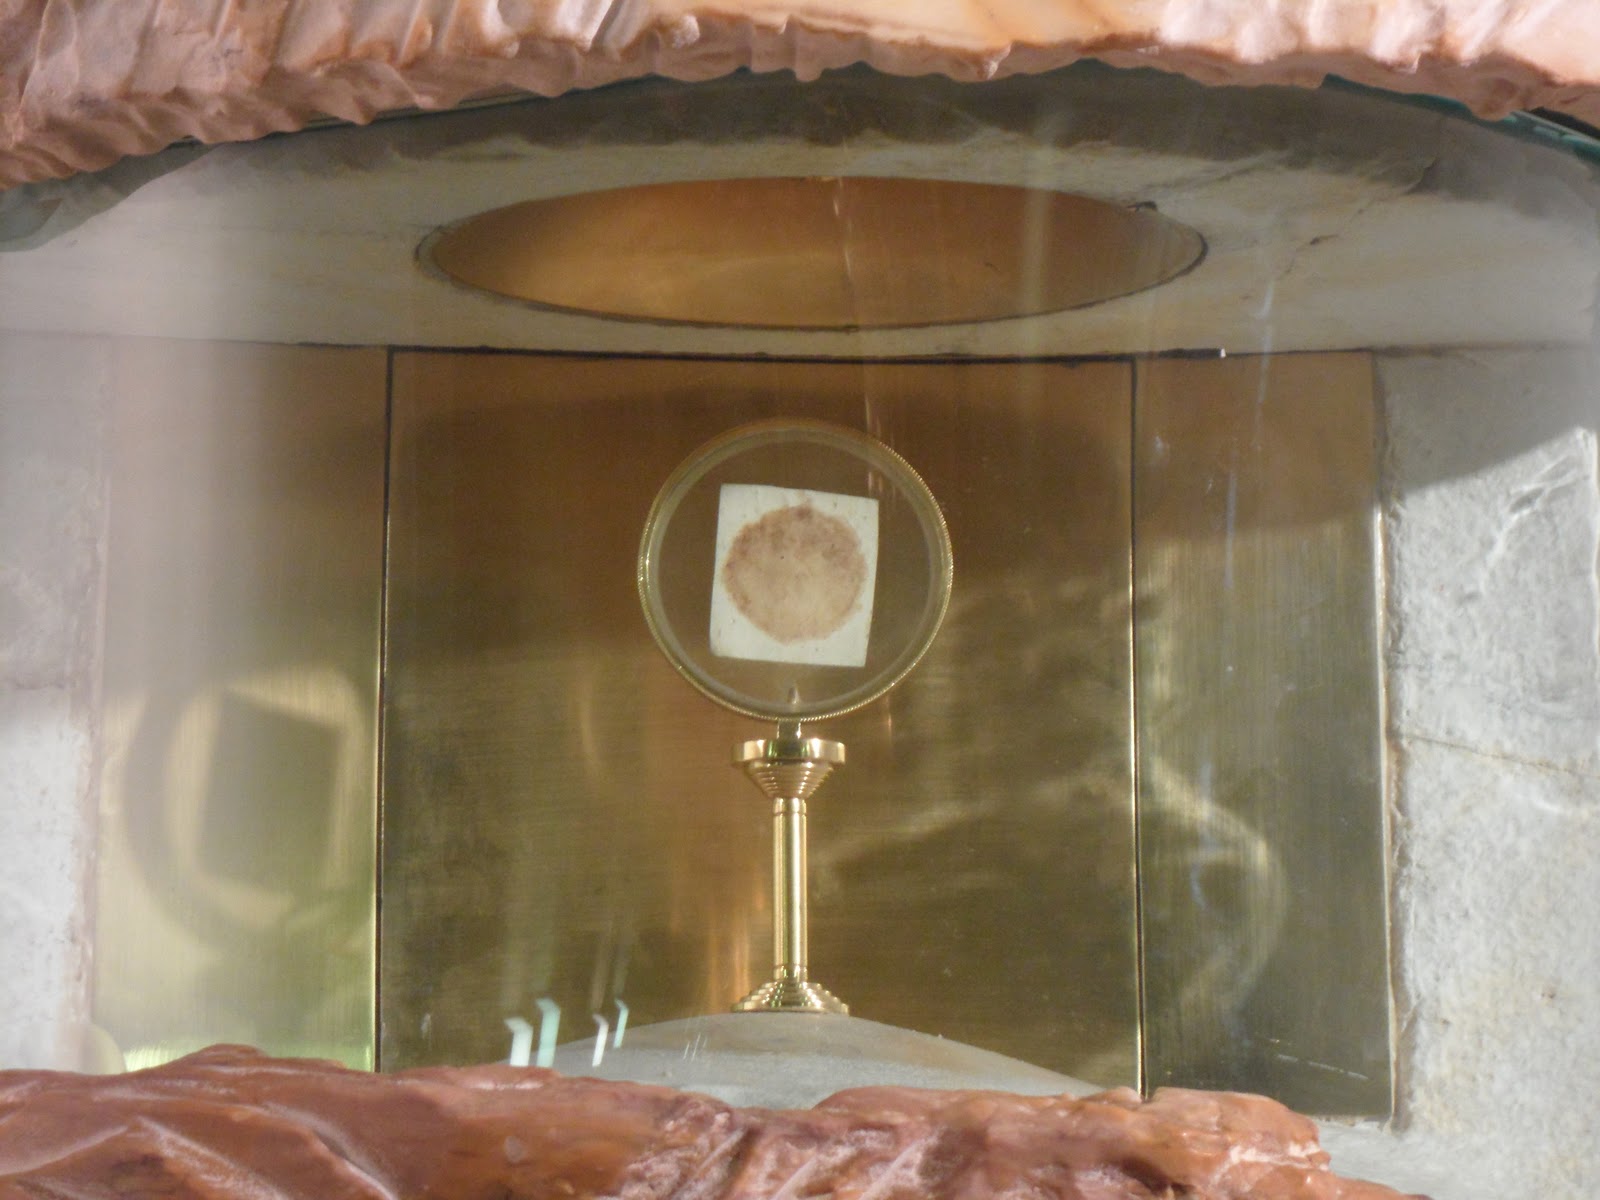 Kako se je dogodilo euharistijsko čudo čija se relikvija čuva u svetištu sv. Rite u Cascii